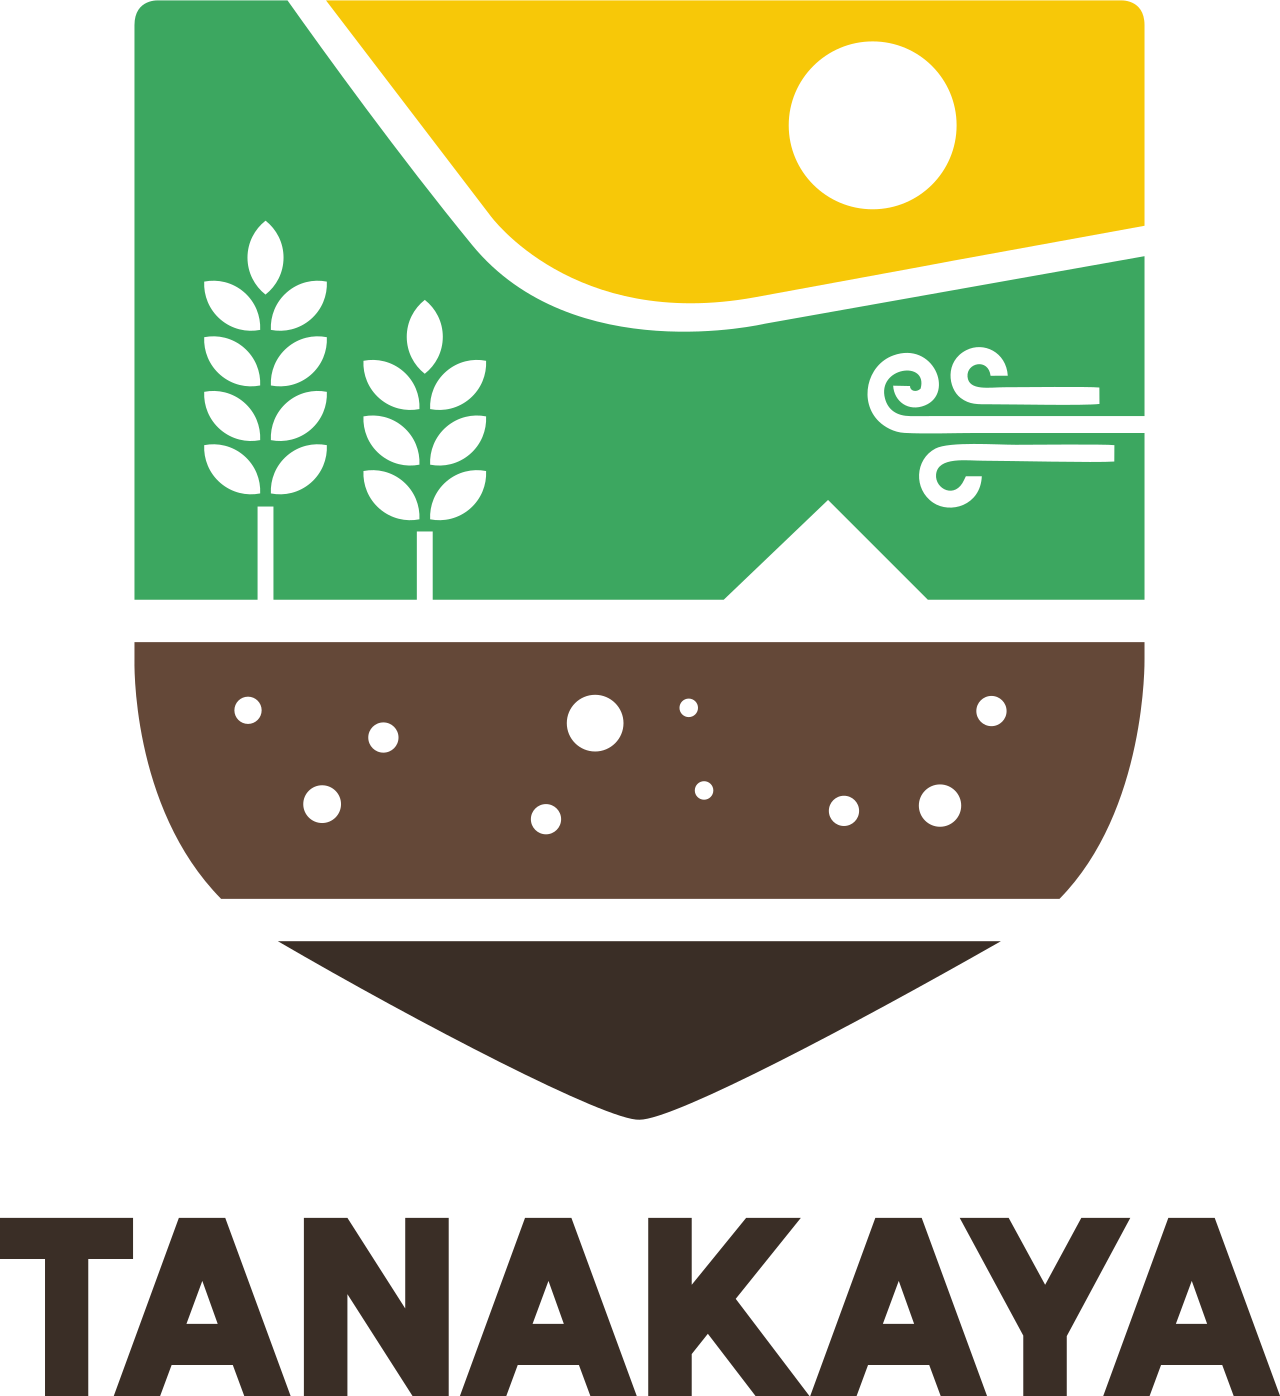 TANAKAYA's web page